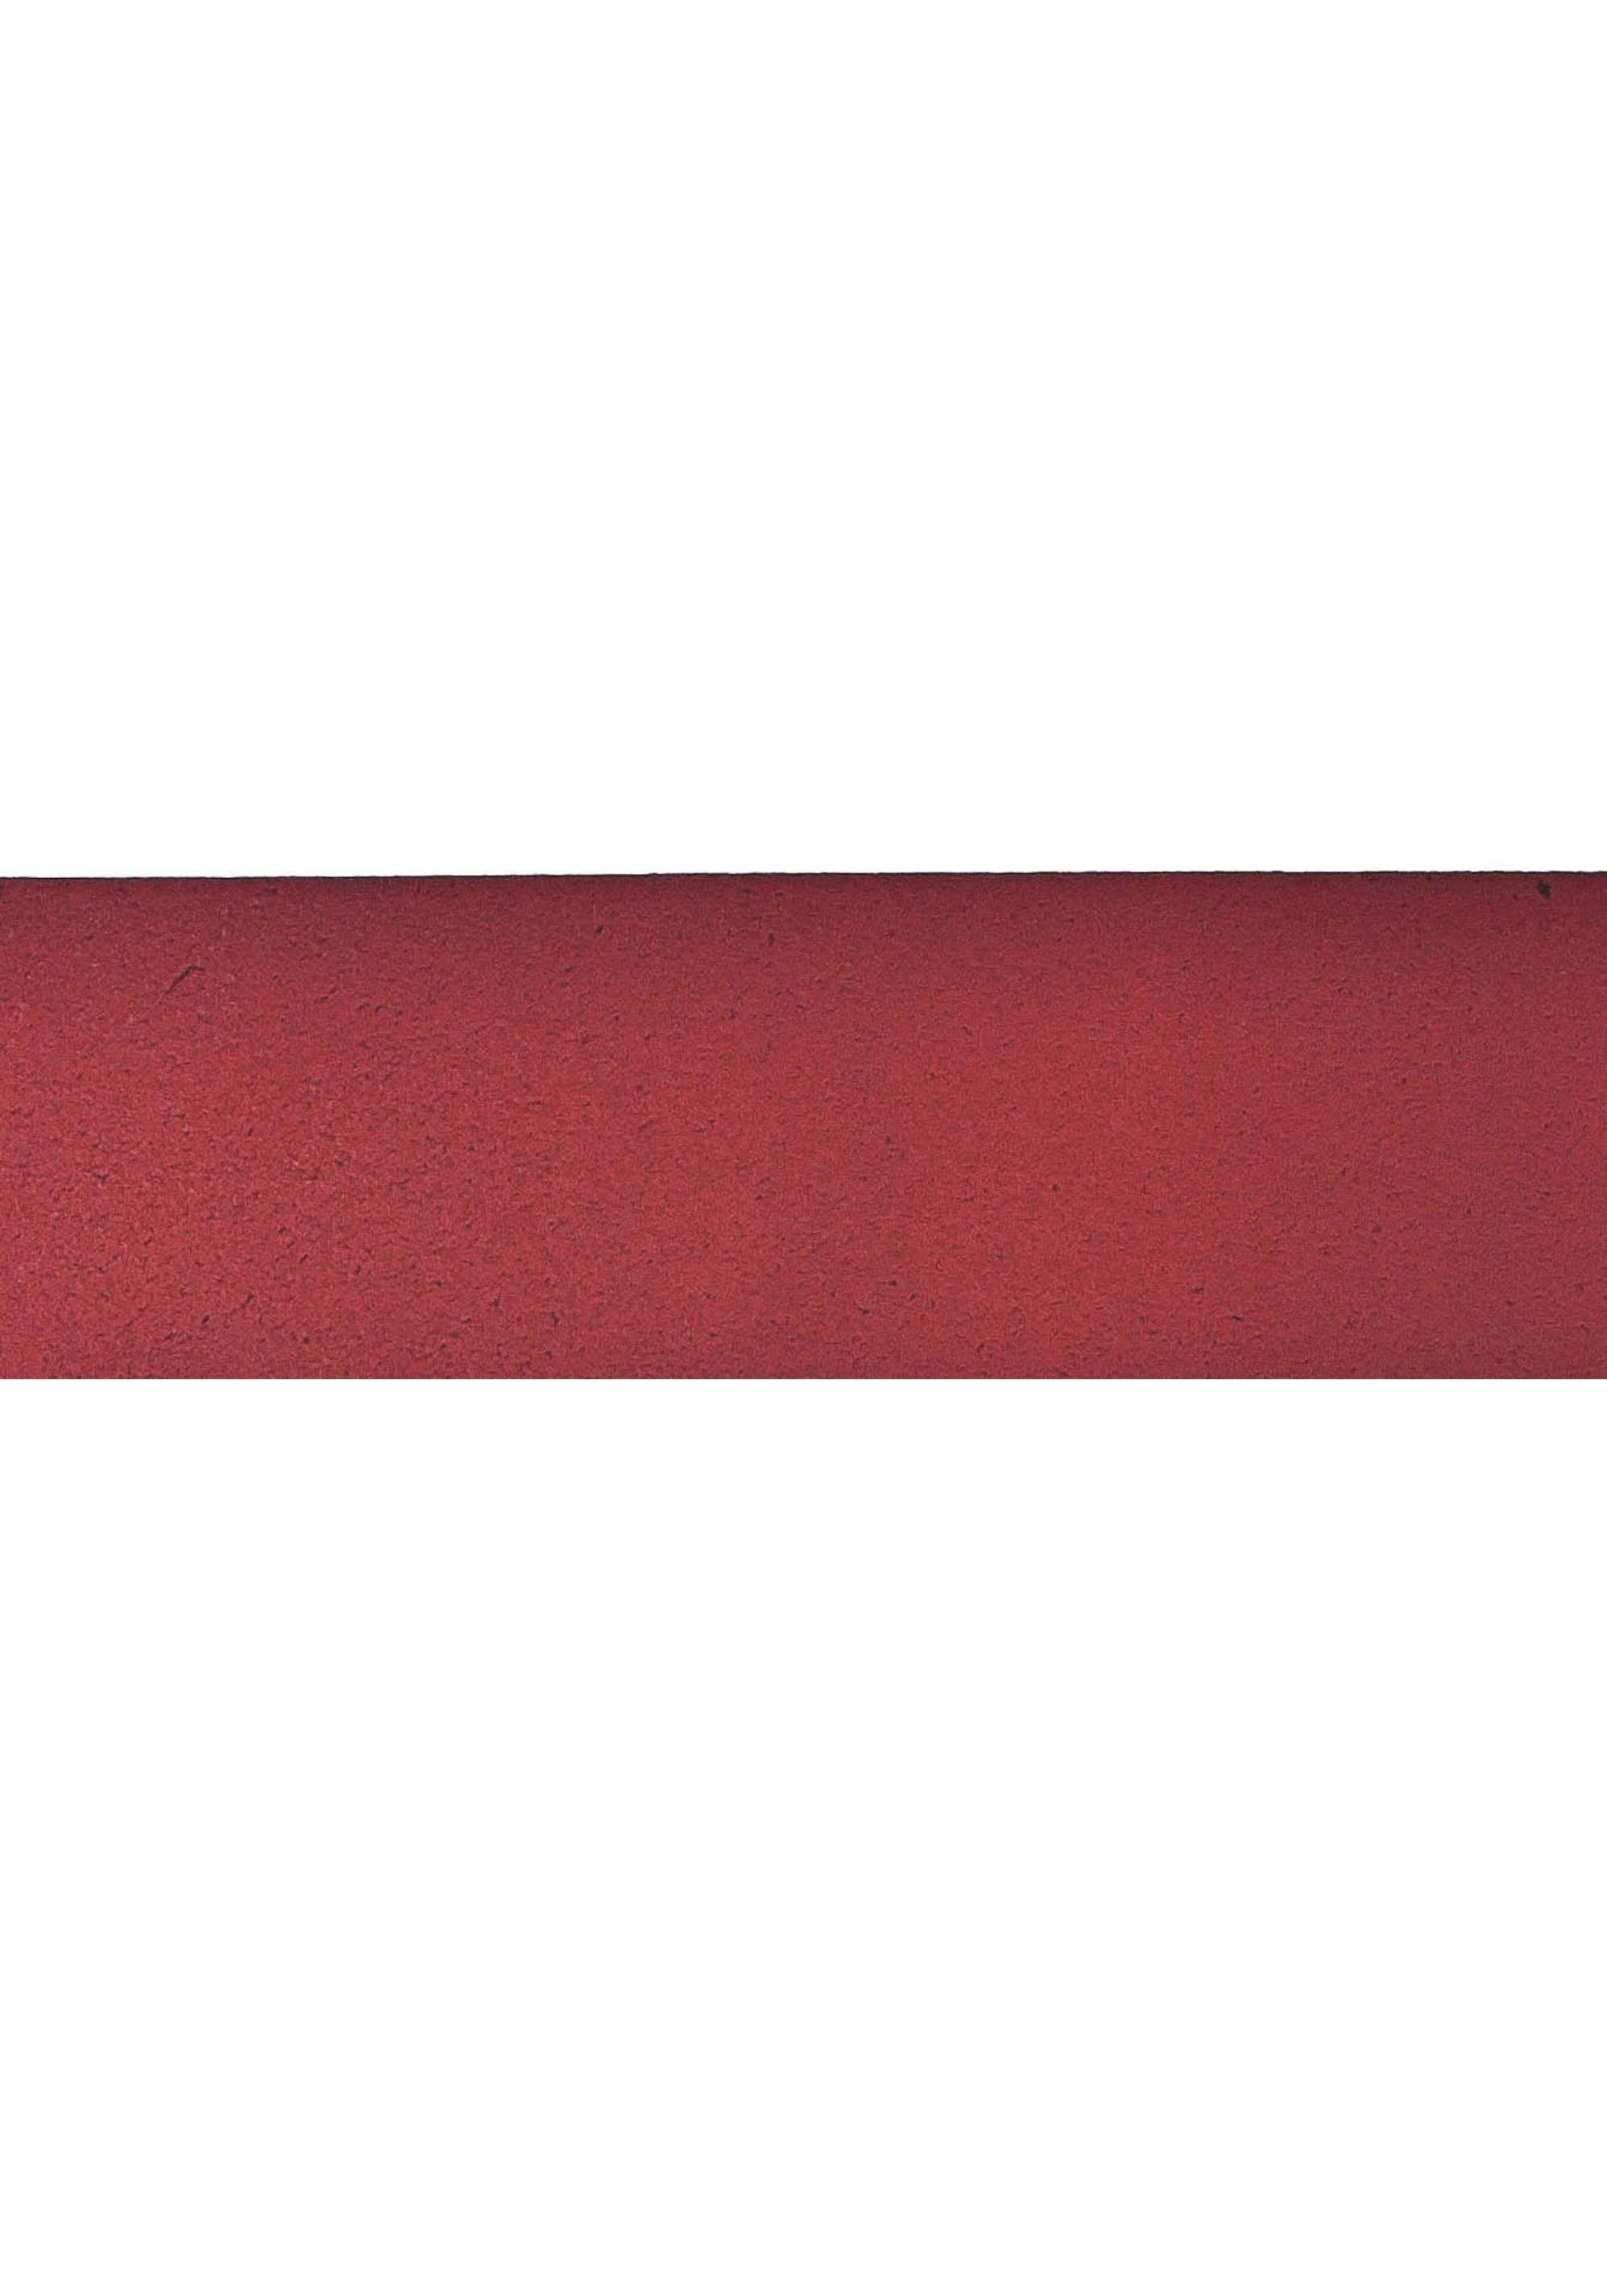 Ledergürtel im rot Gürtelschnalle Antik-Look Vanzetti